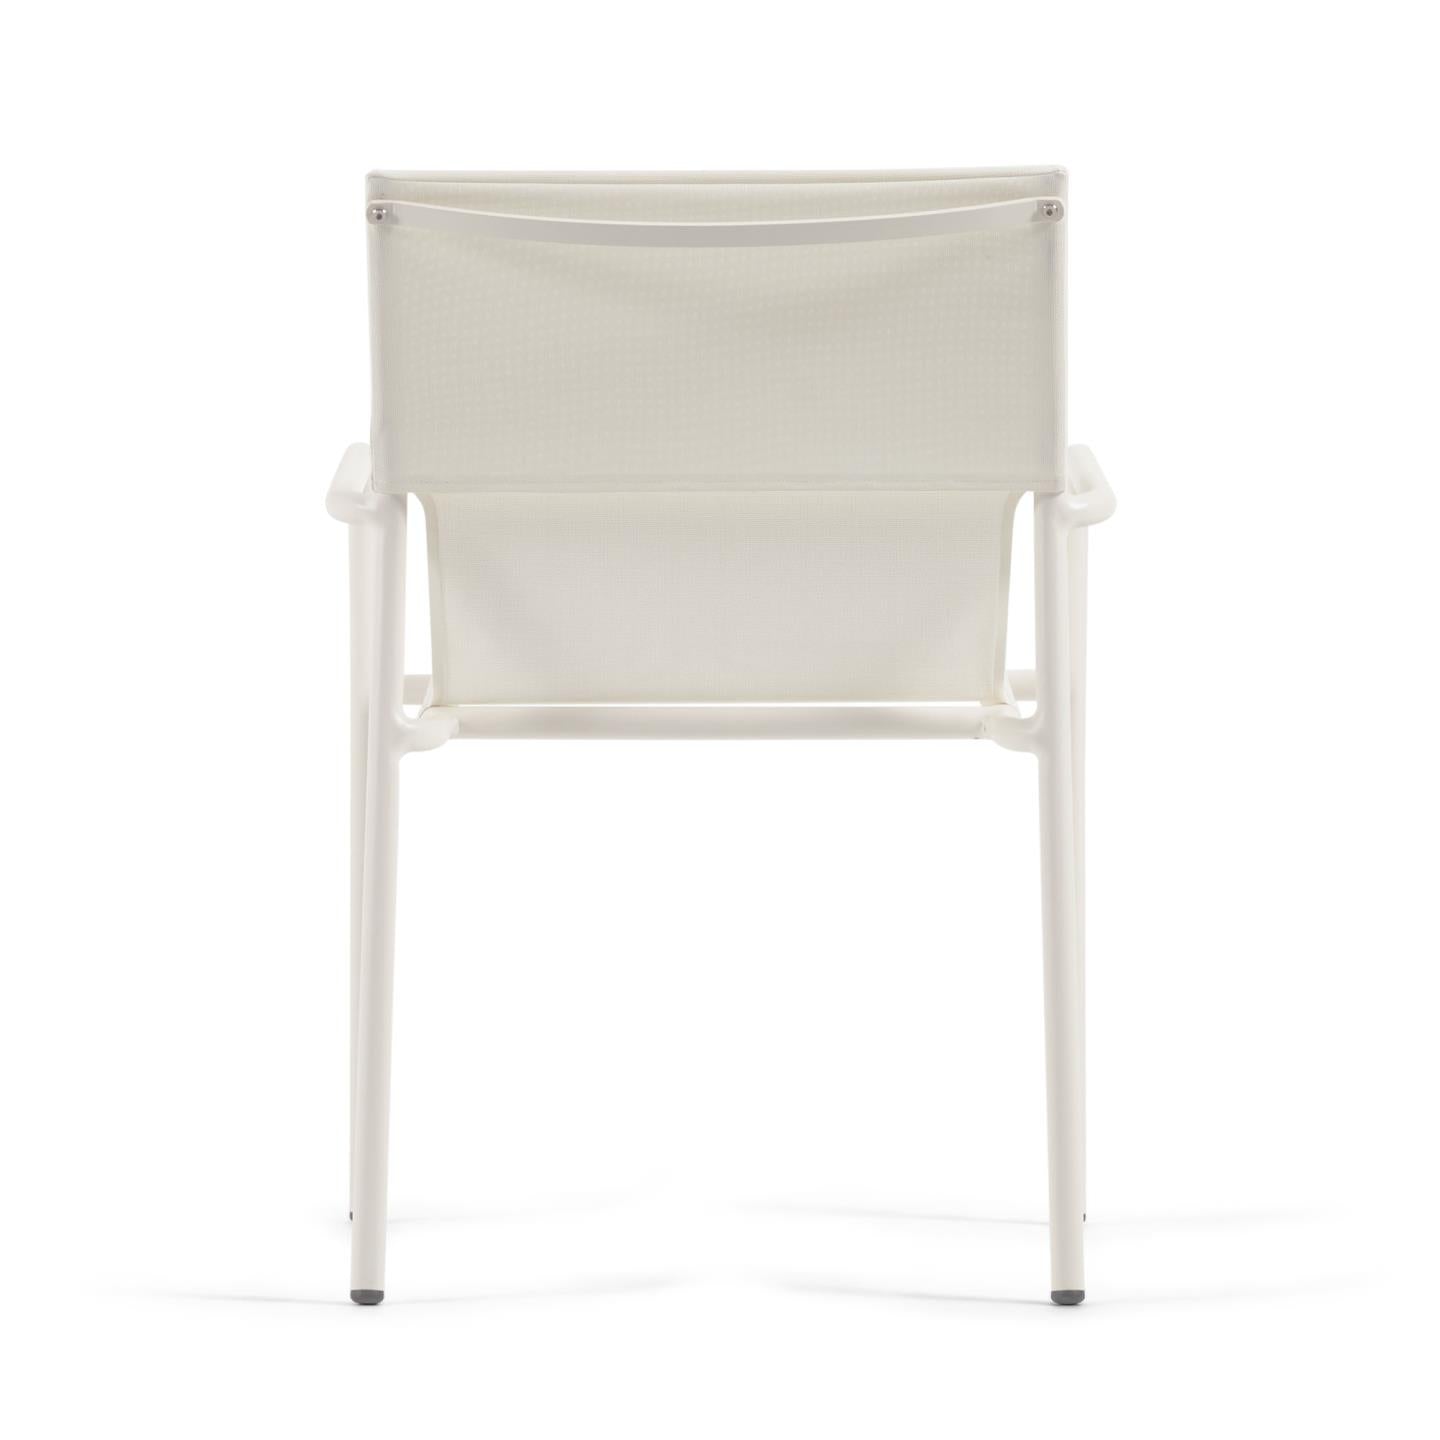 Zaltana egymásba rakható kültéri szék alumíniumból, matt fehérre festett kivitelben